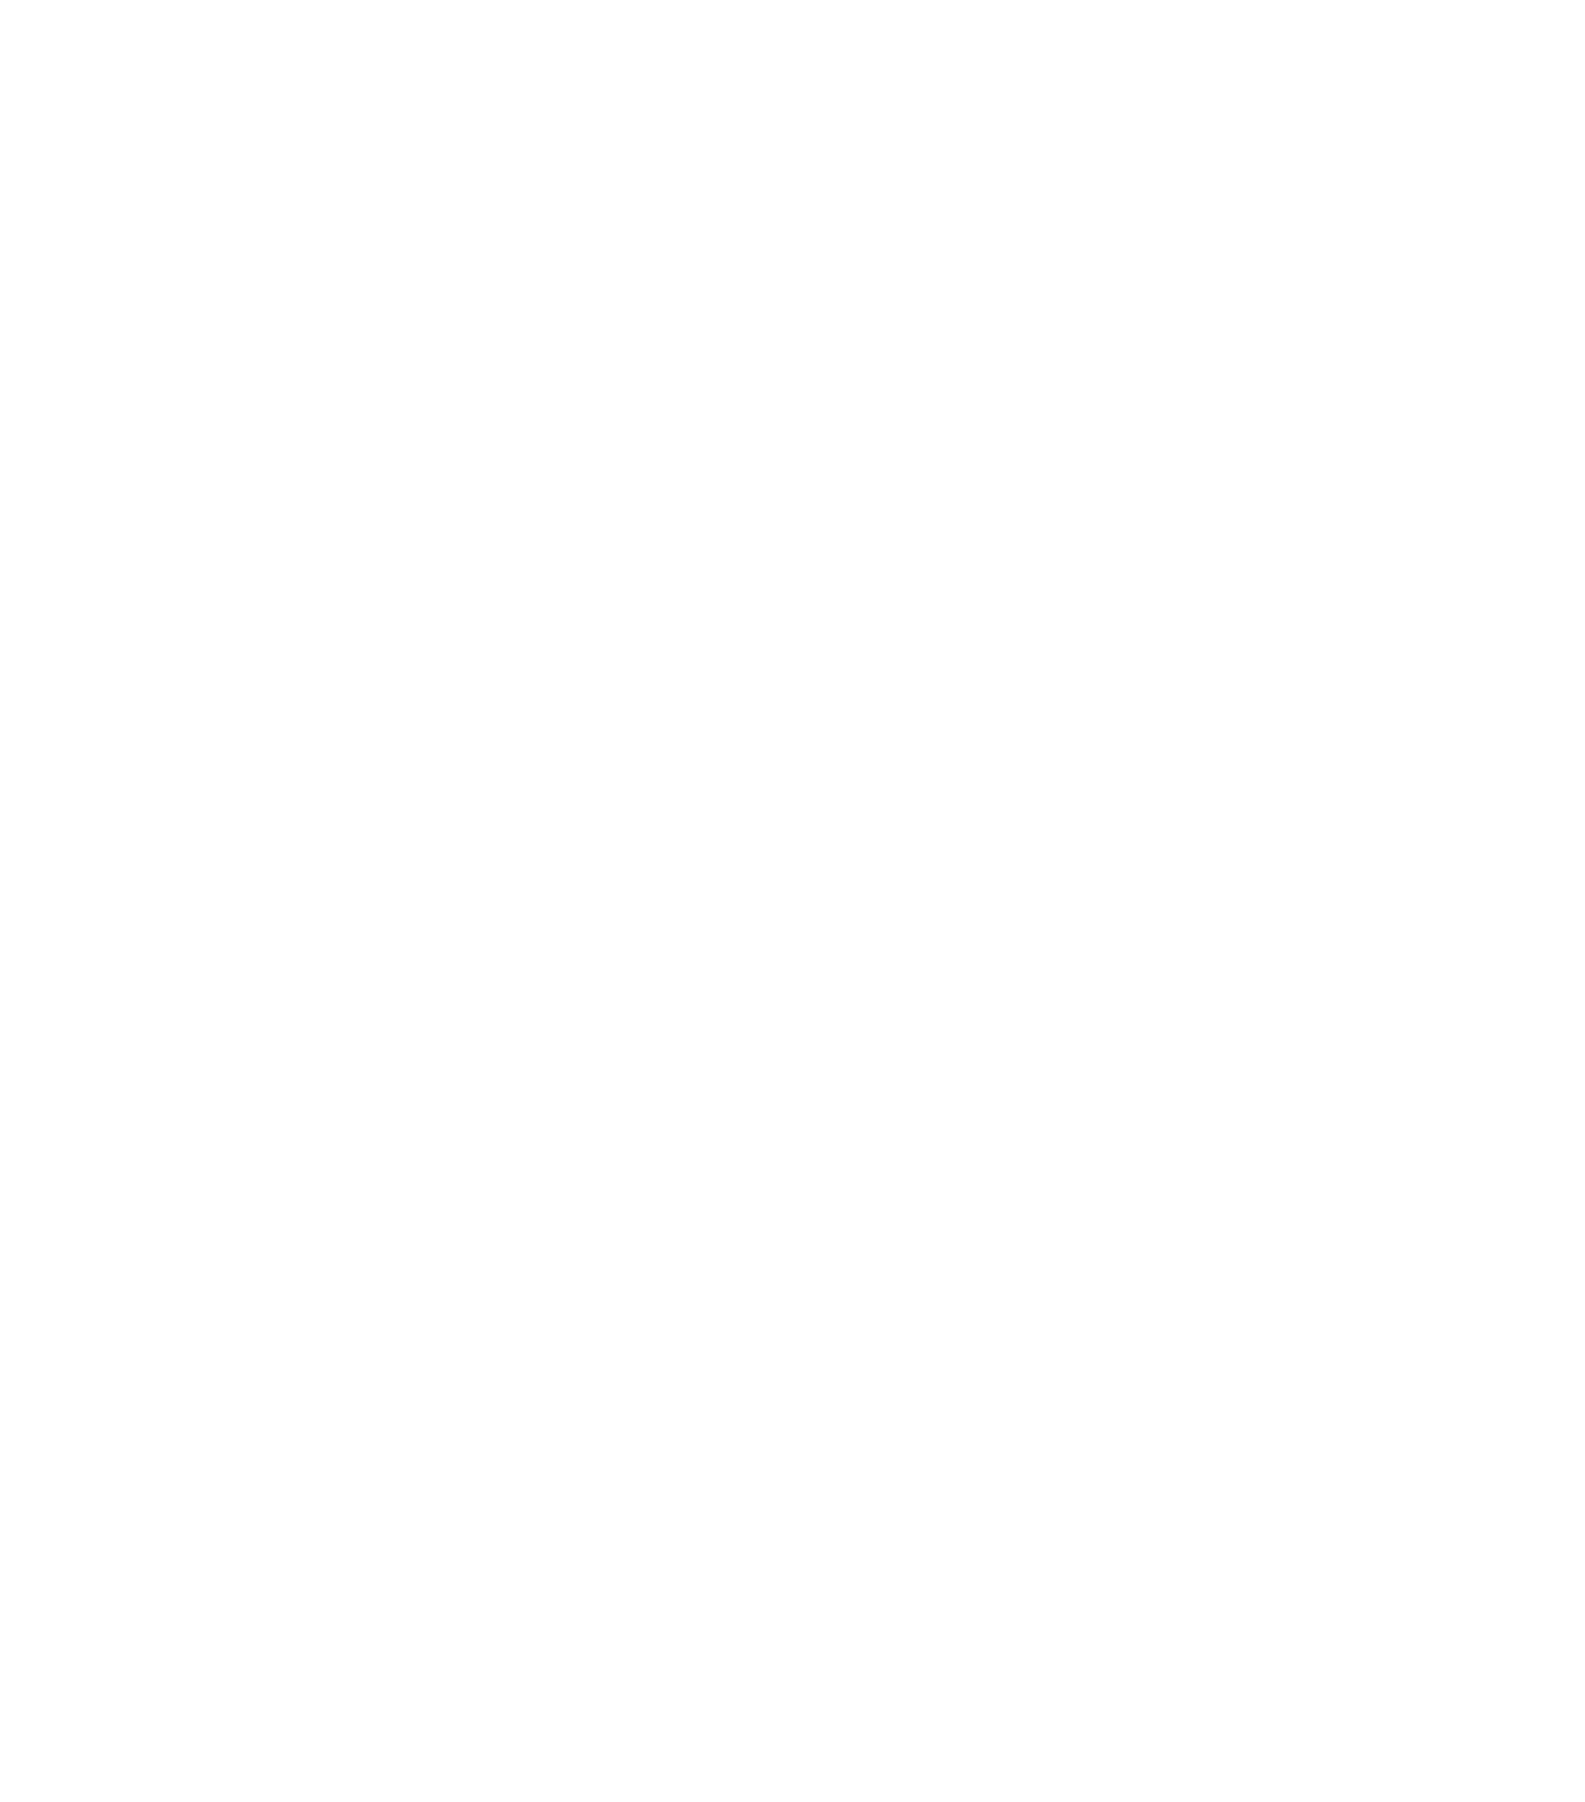 Markforged logo for dark backgrounds (transparent PNG)